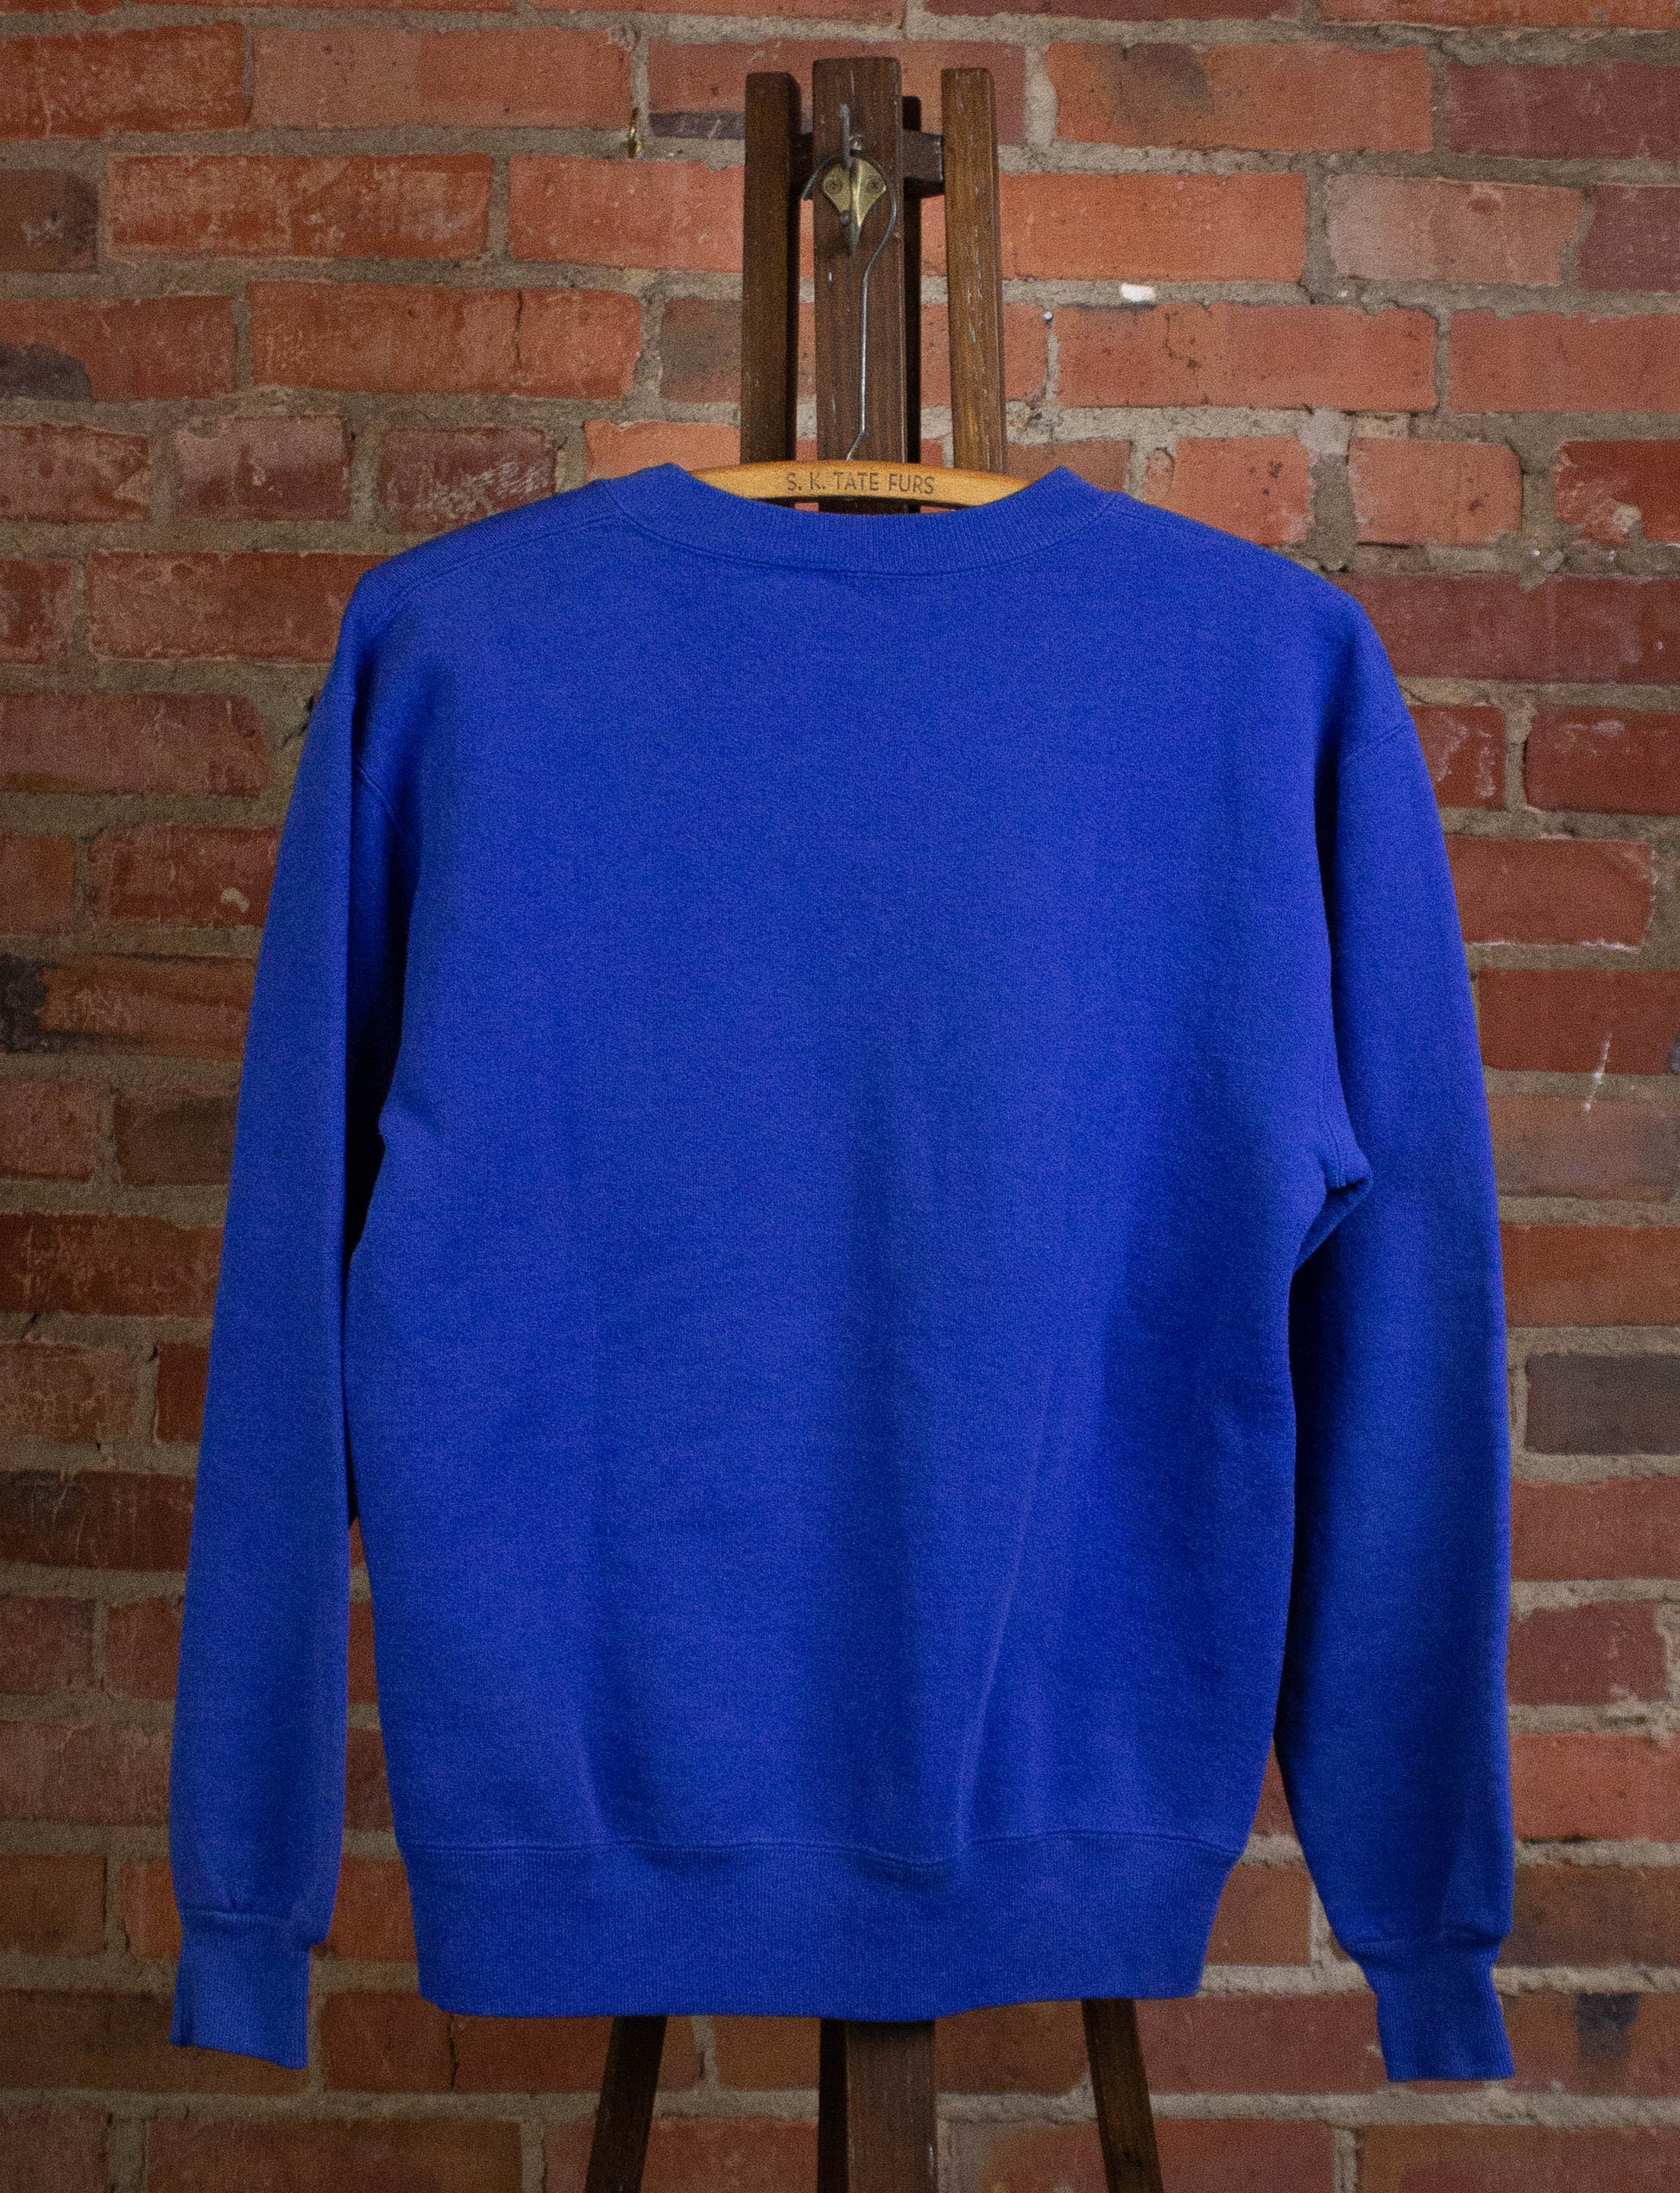 Vintage Wentzville Indians Sweatshirt 90s Blue Medium